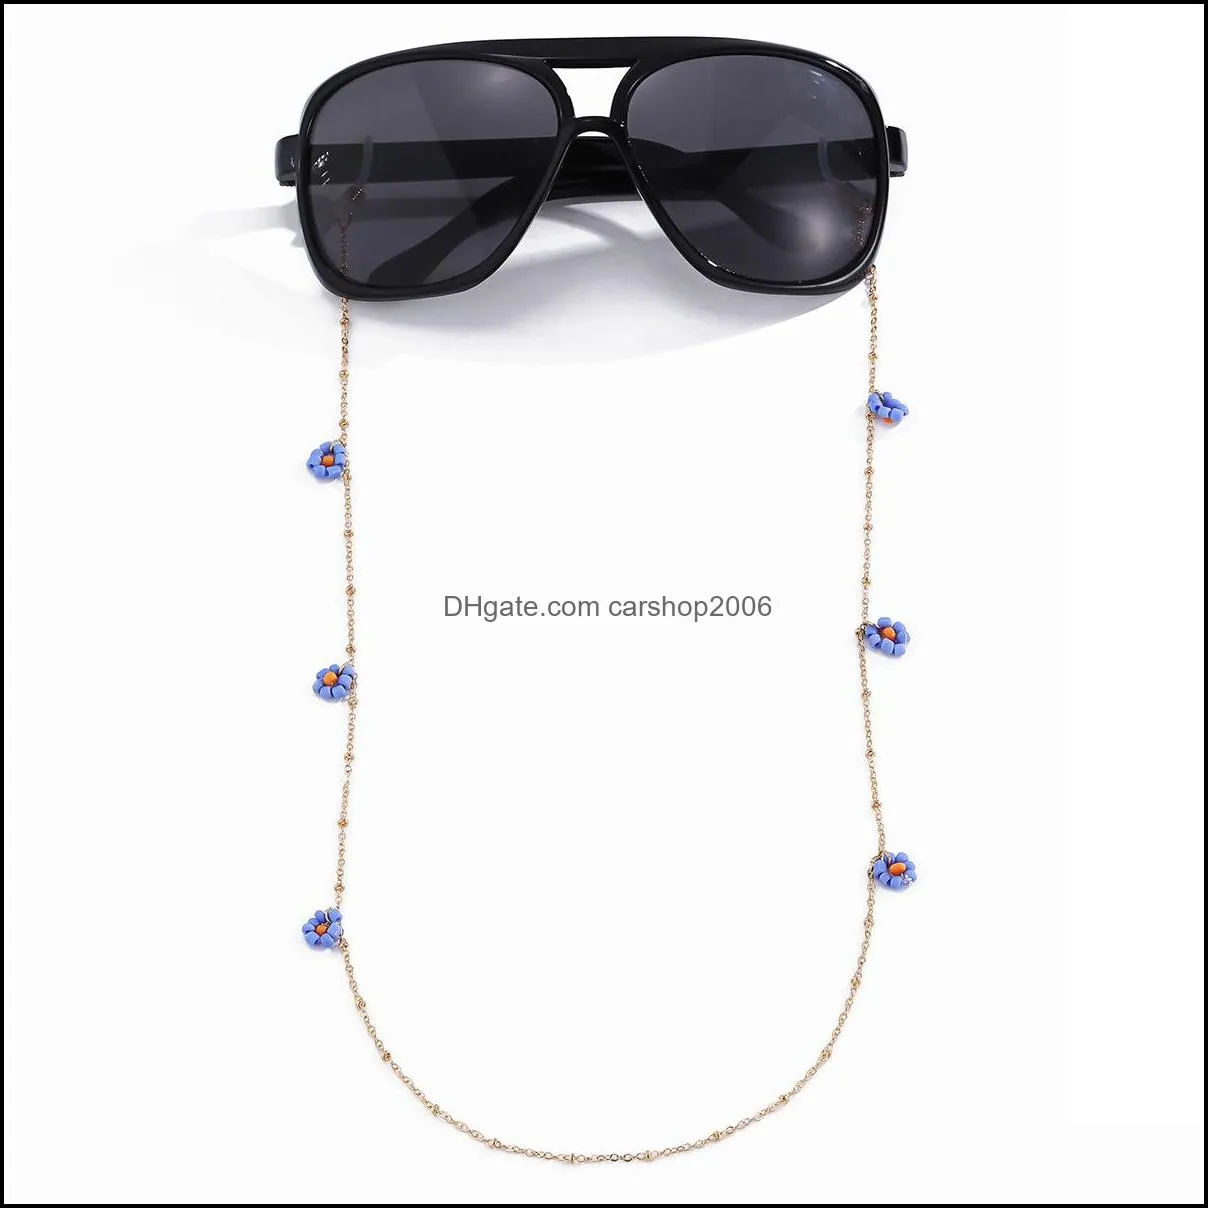 EyeGlasses Correntes acess￳rios ￳culos Acess￳rios da moda Moda chique de arroz com copos de flores titores de corrente Chain Straps Sunglasses Drop colapso da al￧a do colapso